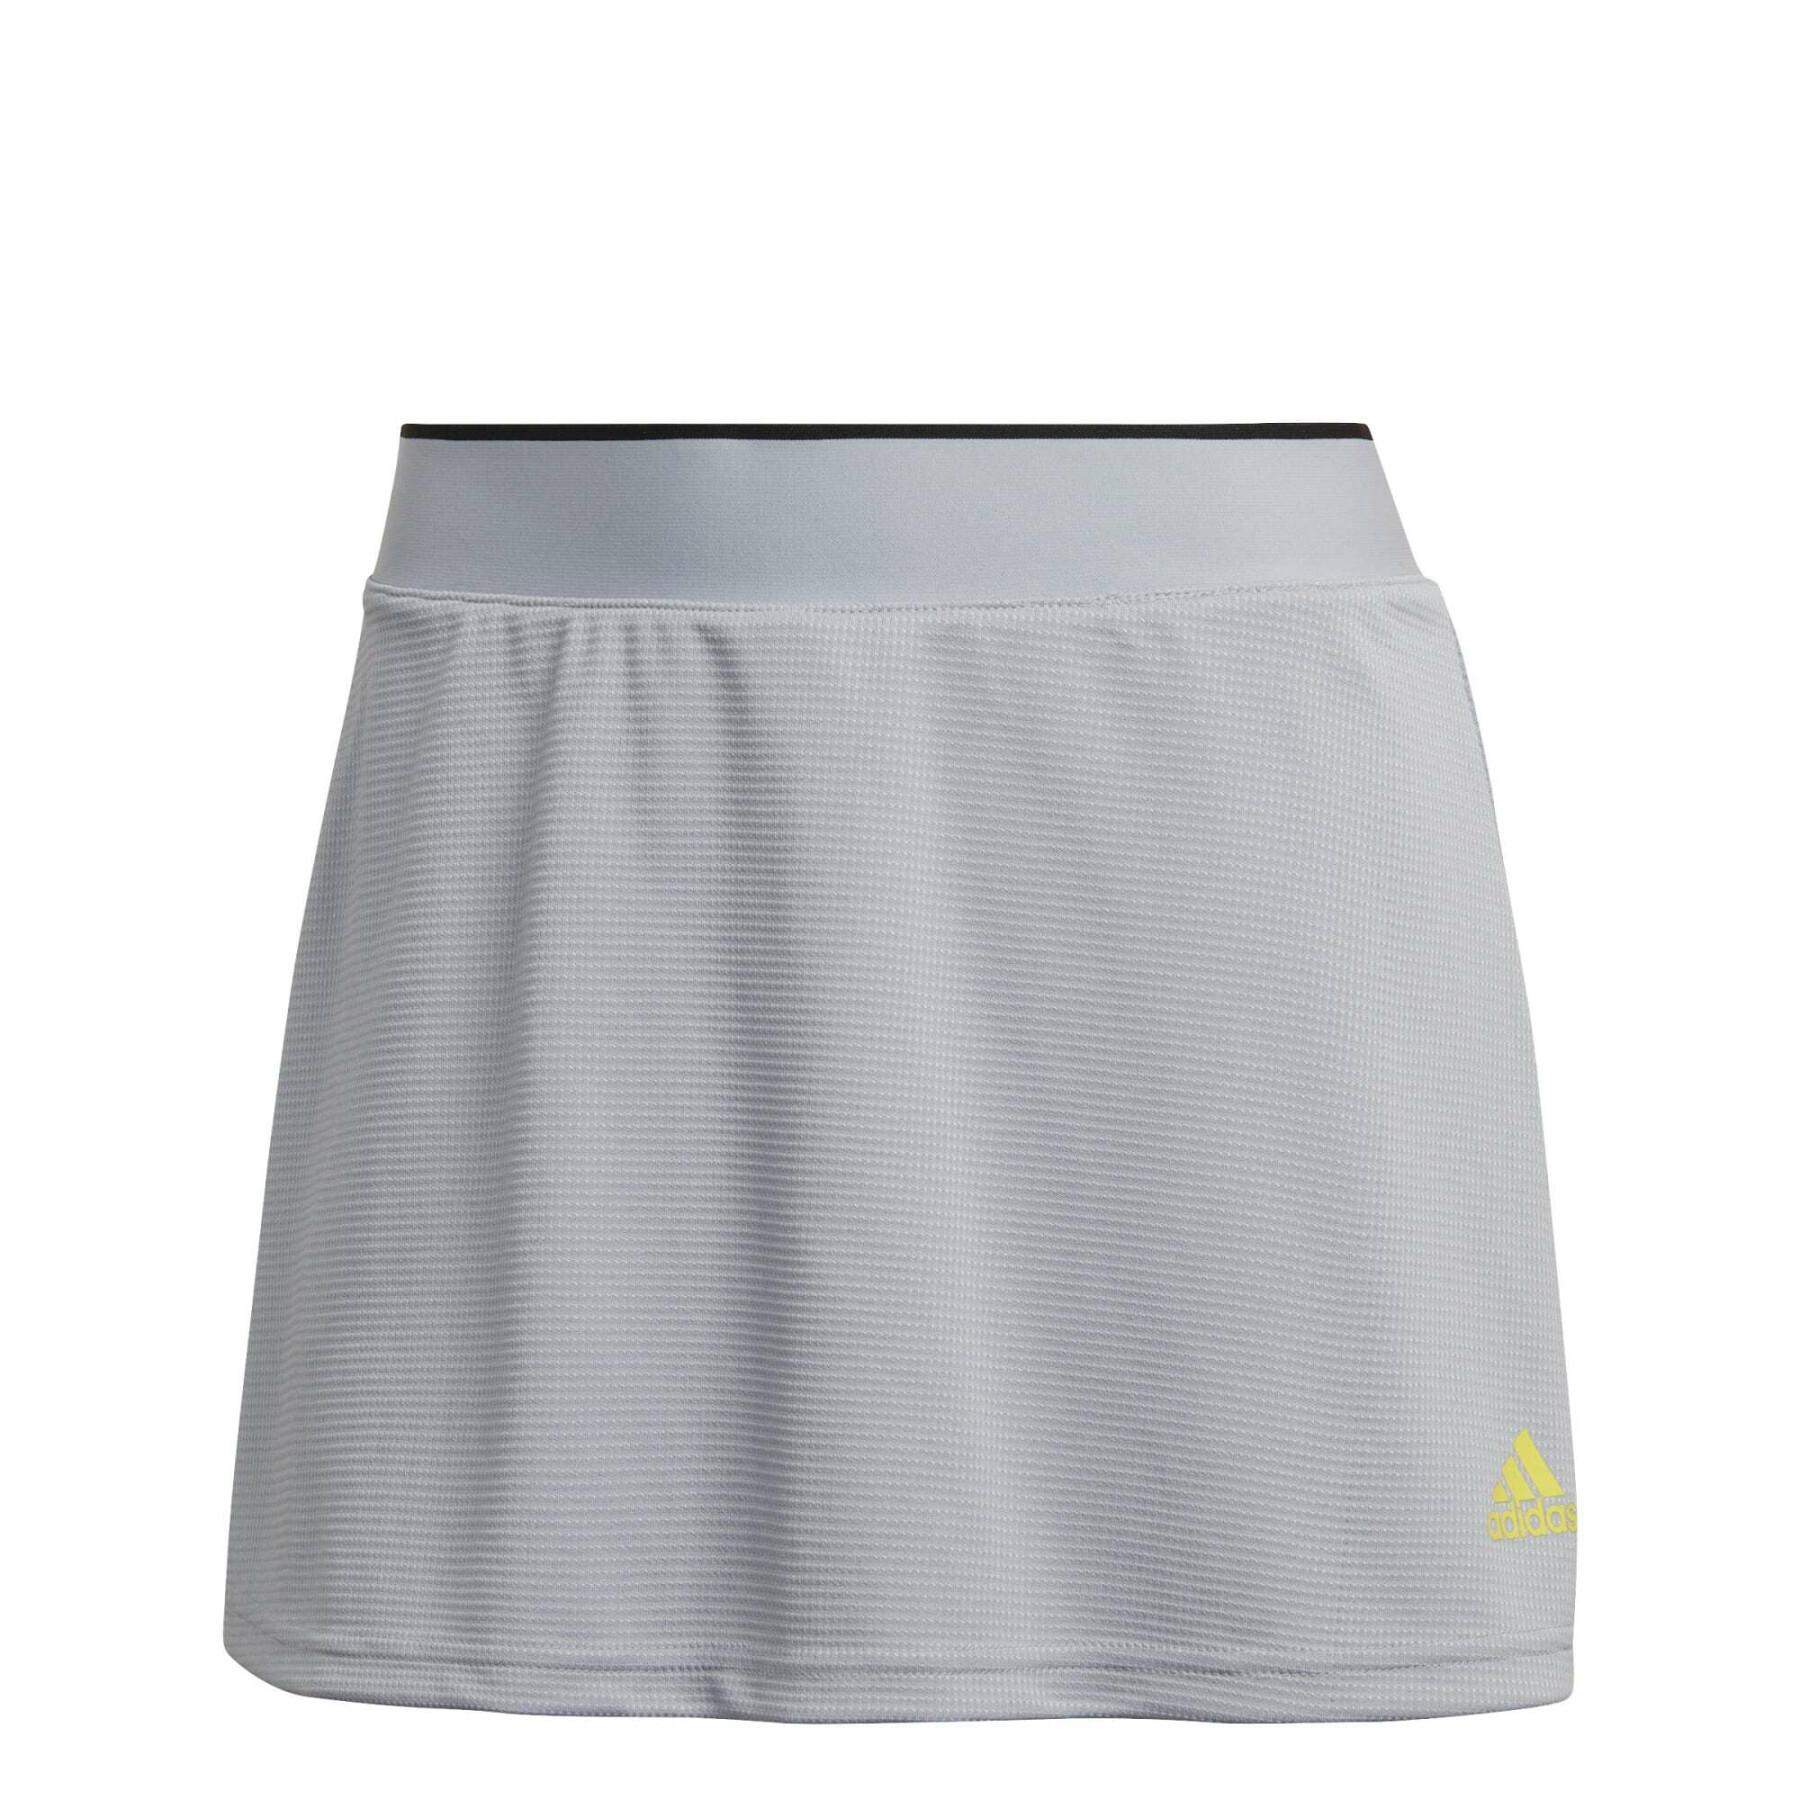 Spódnica damskiego klubu tenisowego adidas